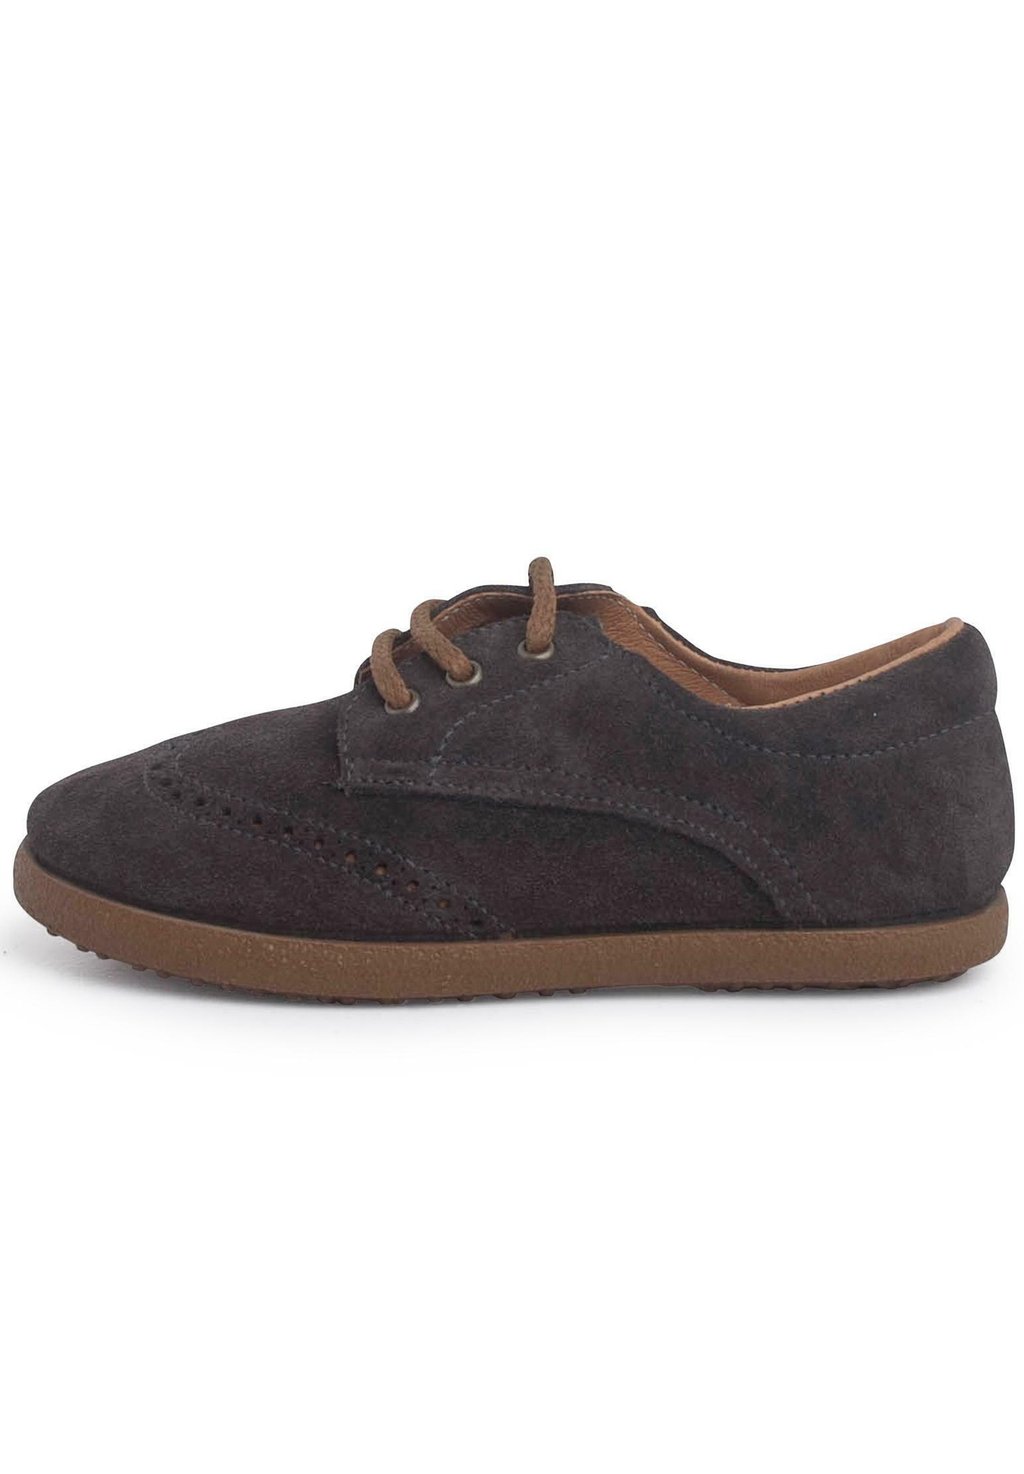 Обувь для обучения OXFORD Pisamonas, цвет gris oscuro обувь для обучения inglesito pisamonas цвет gris claro